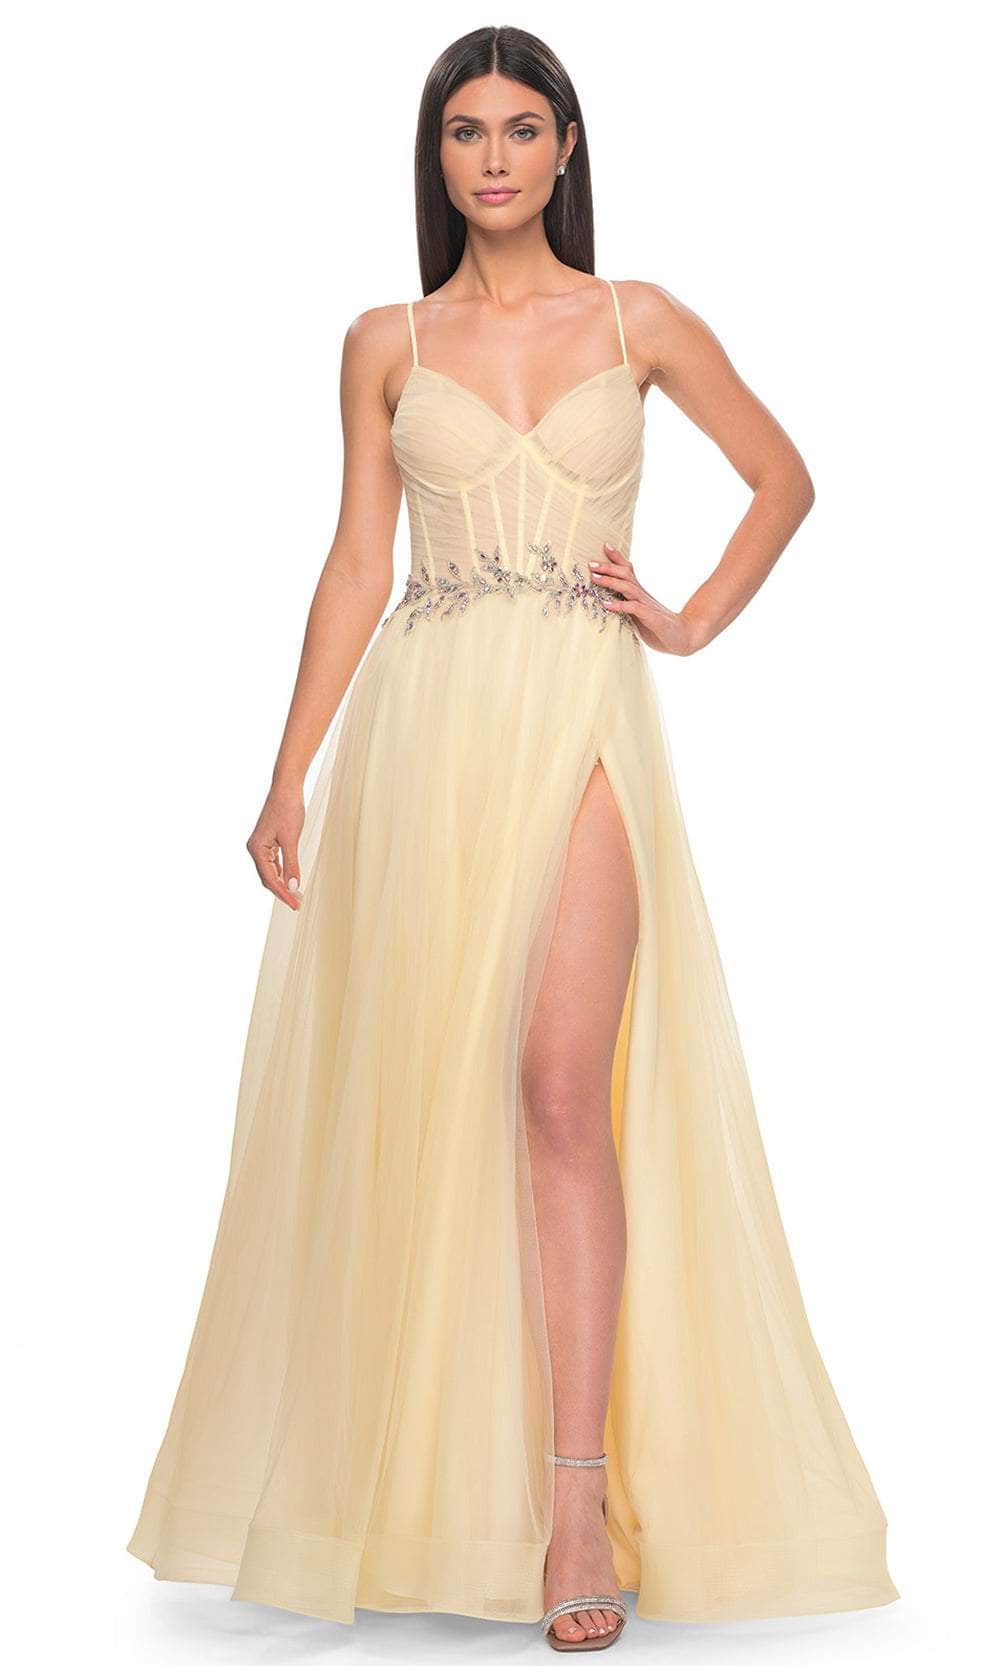 La Femme 32117 - Applique Waist Prom Dress
